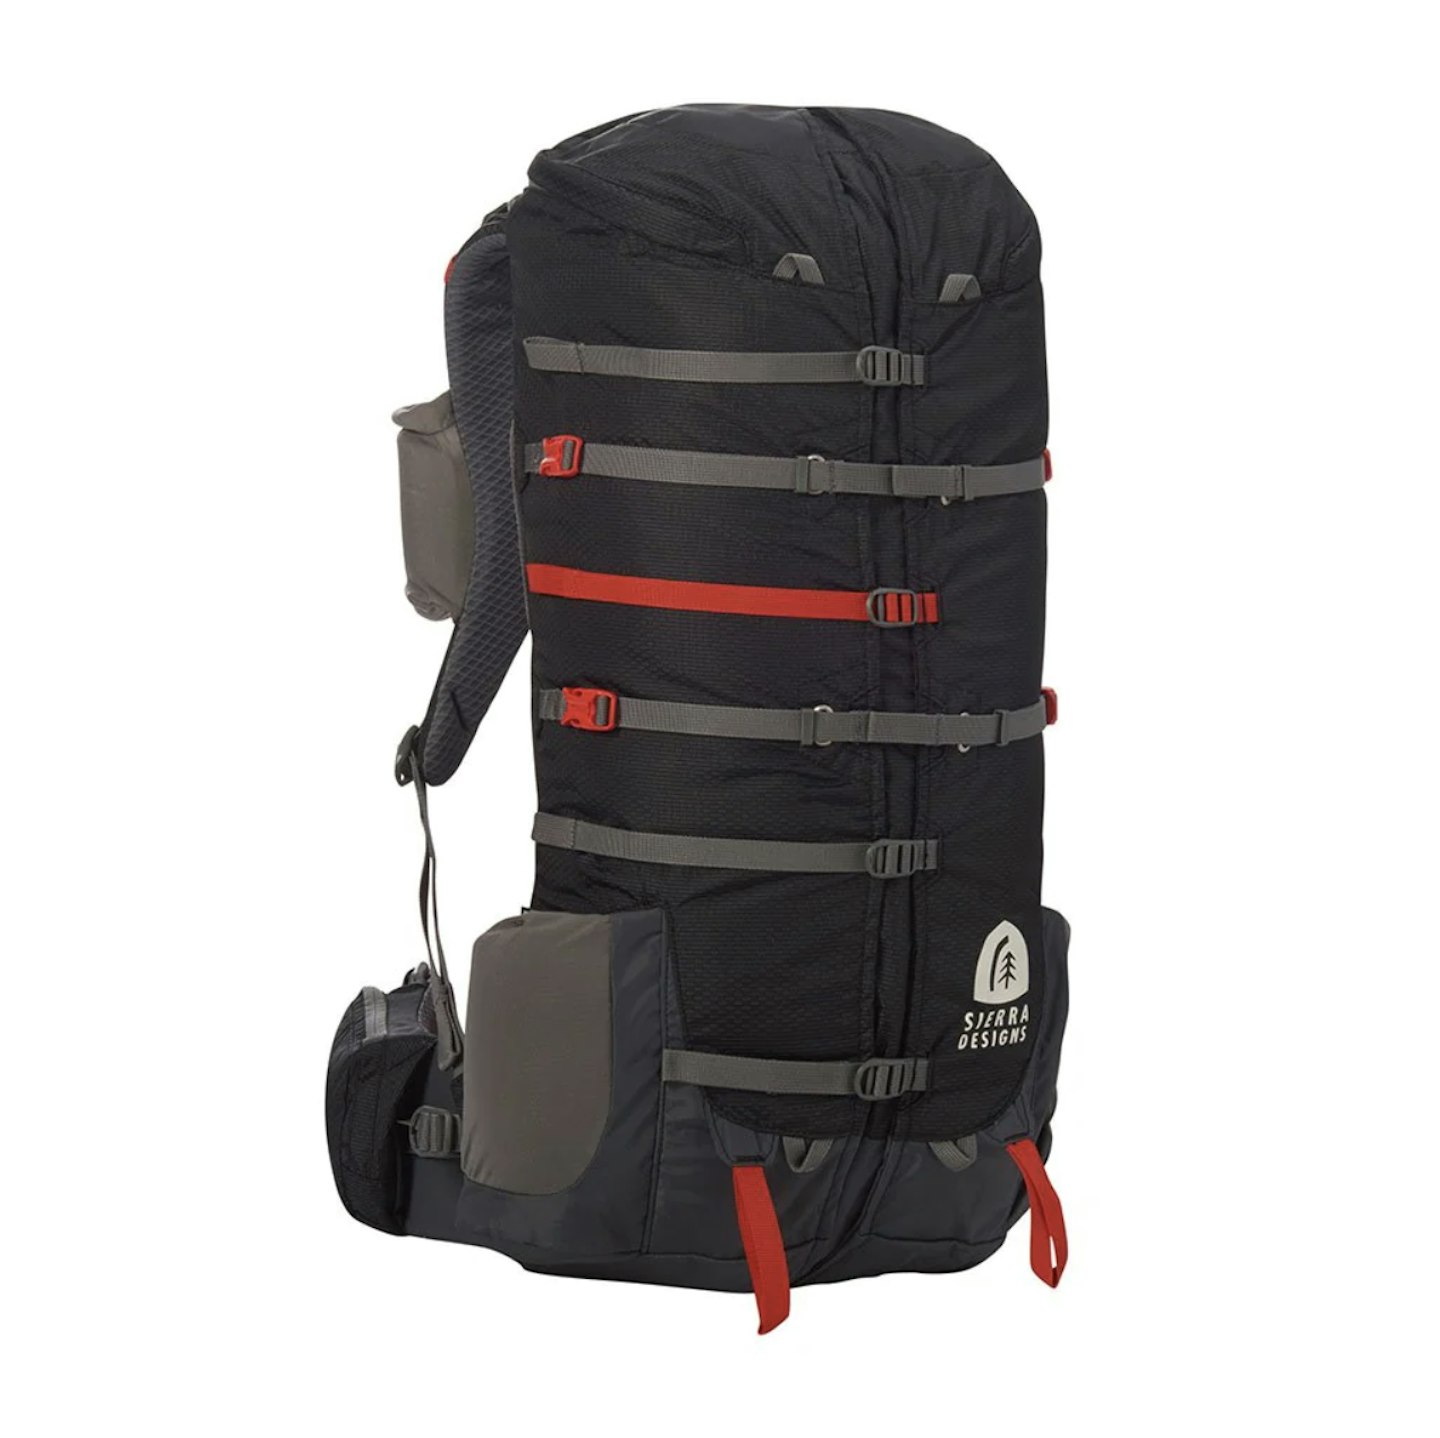 Sierra Designs flux capacitor hiking backpack